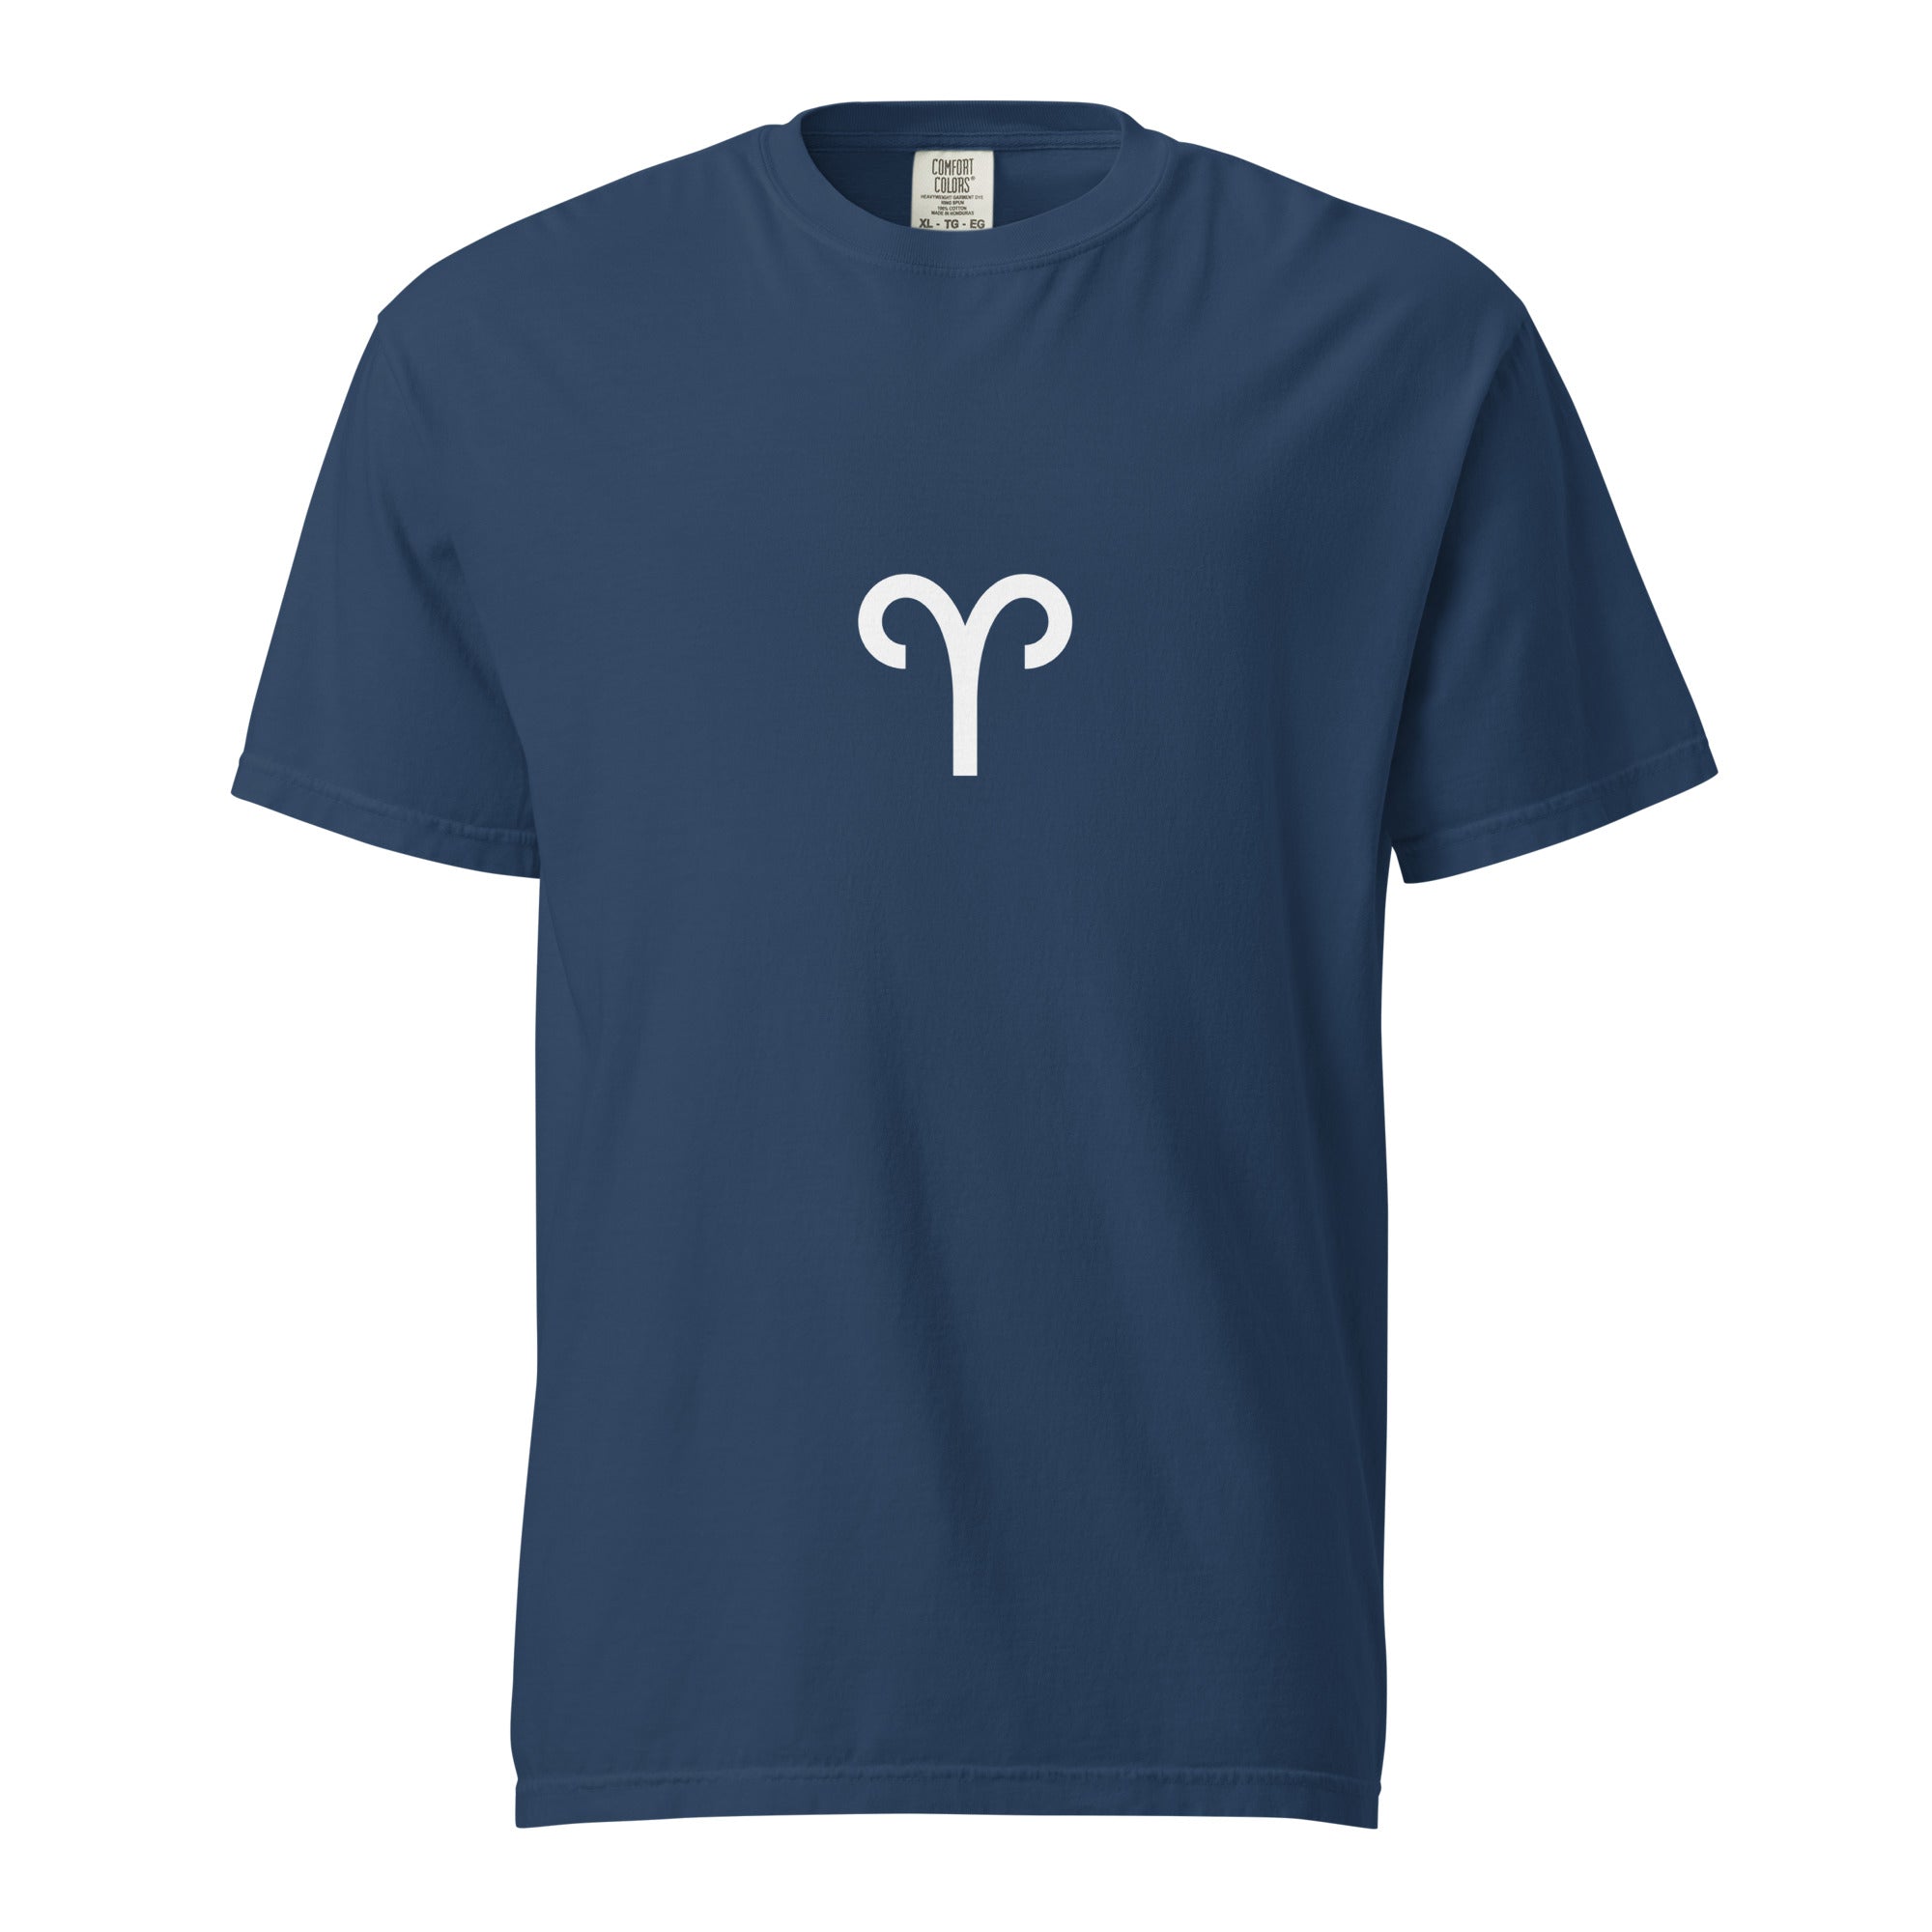 Aries Zodiac T-Shirt